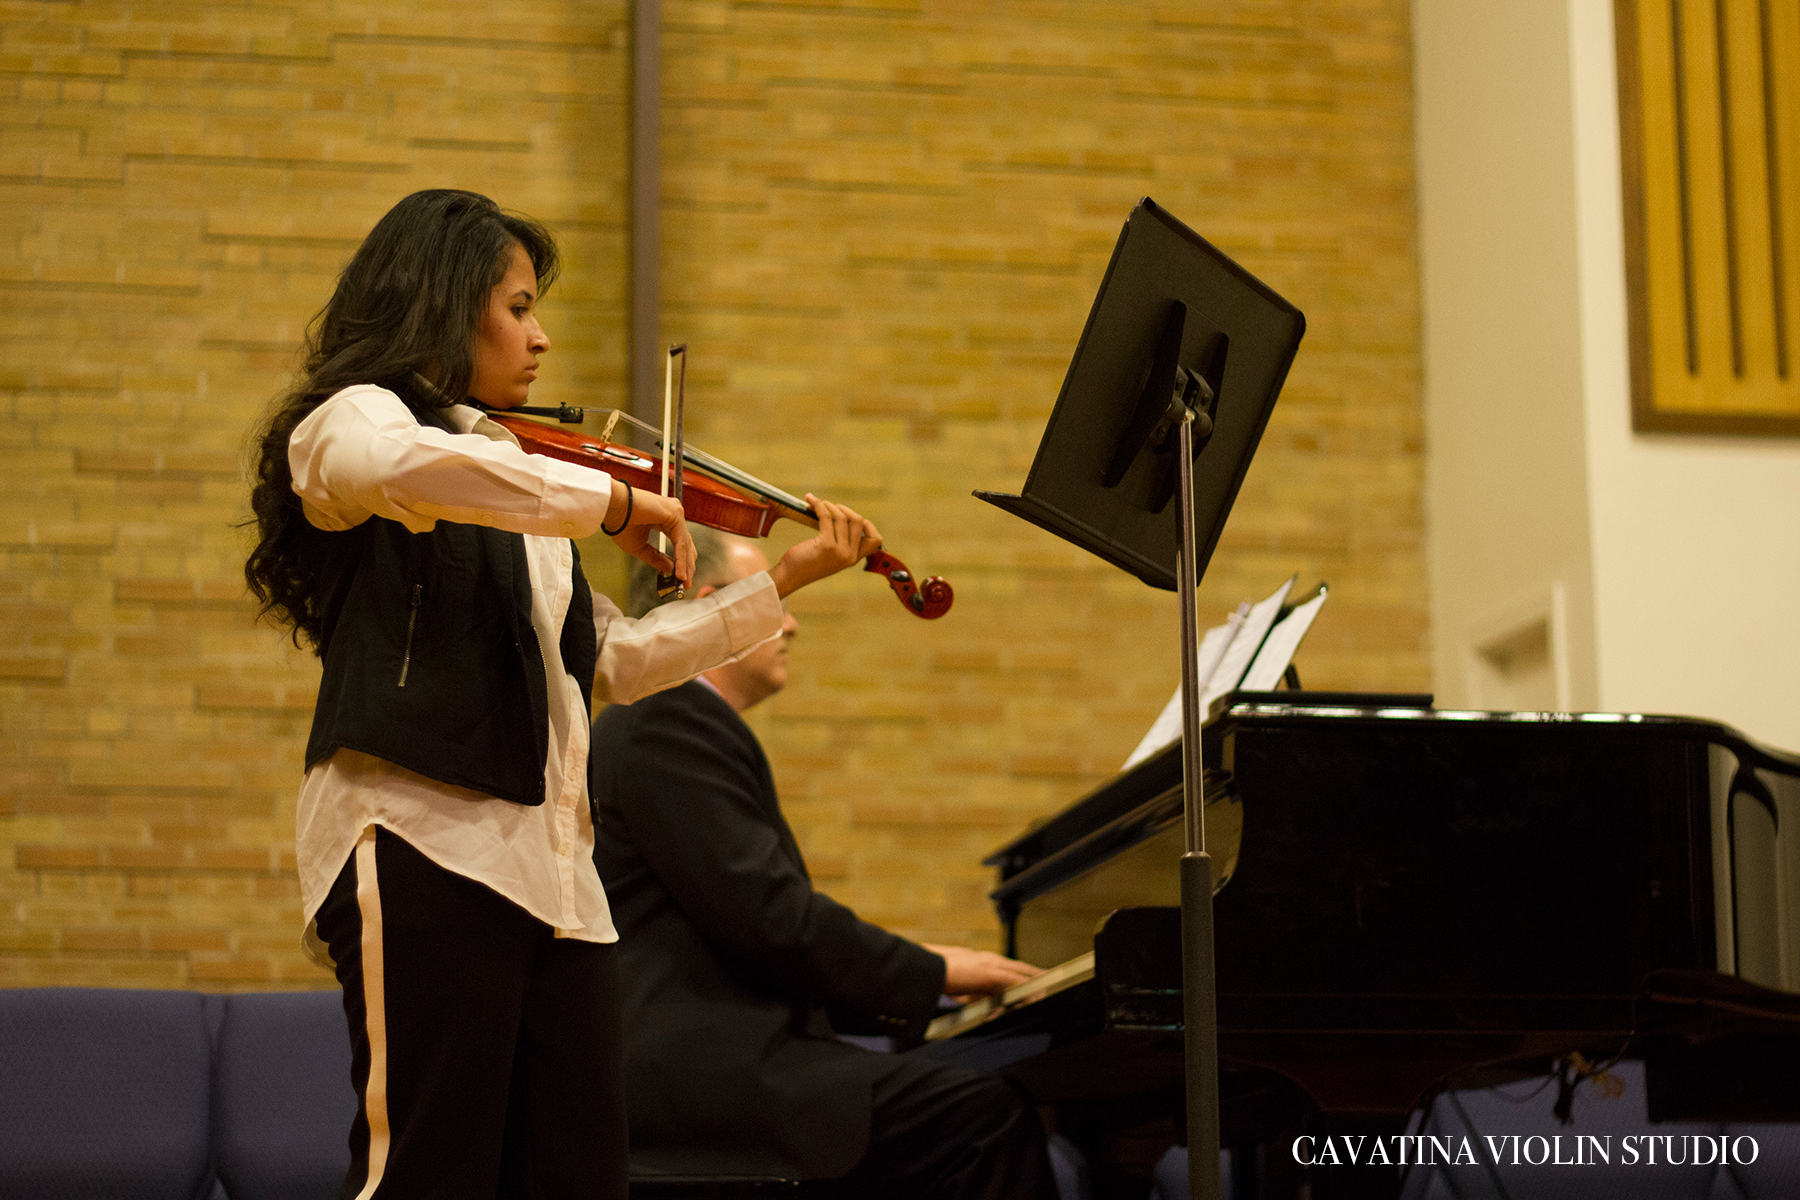 Cavatina Violin Studio - Winter Recital 2017Recital performance.